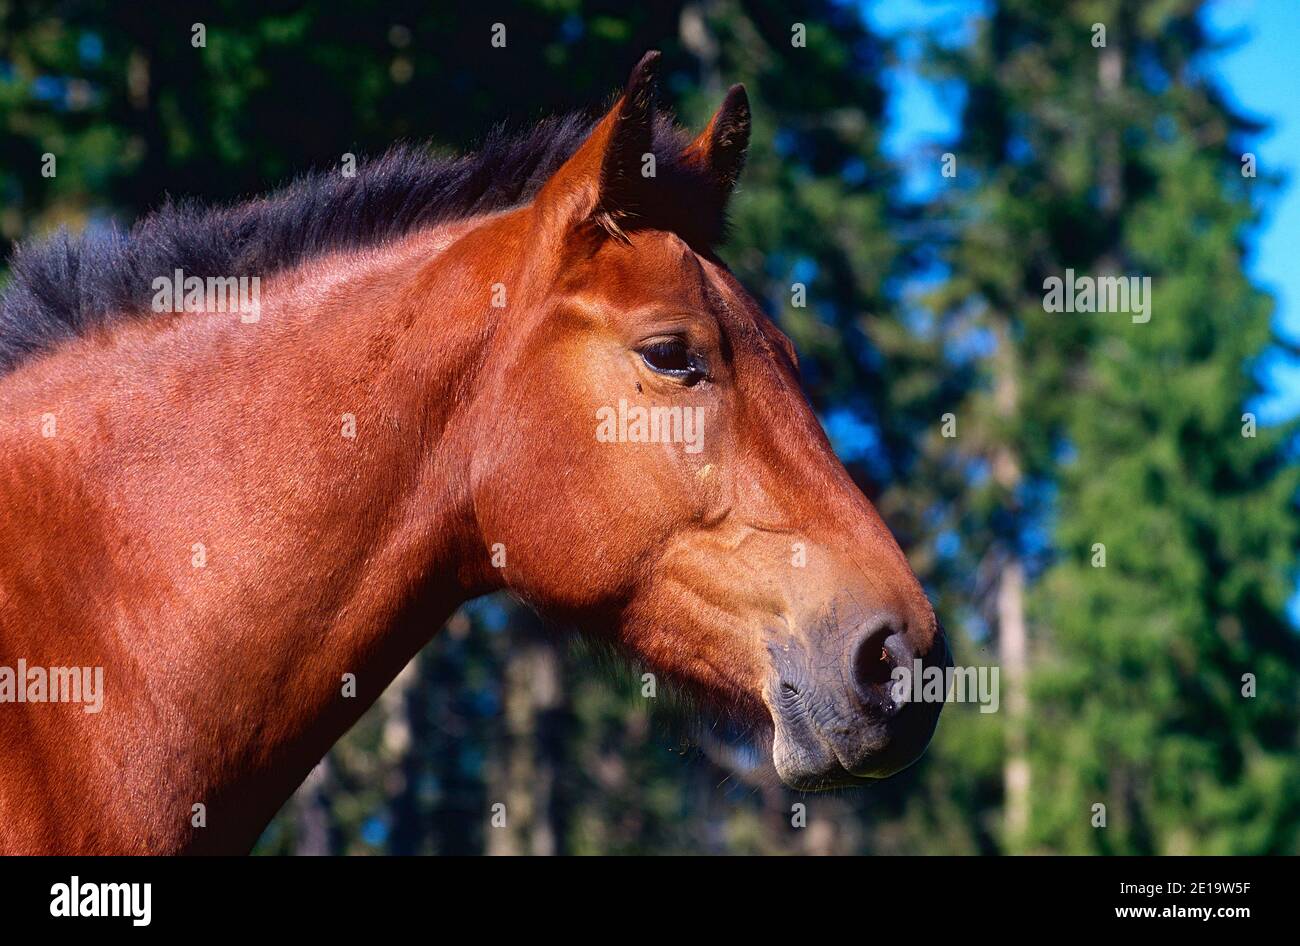 Franches-Montagnes, raza Suiza de caballos, équidos, retrato, mamífero, animal, Franches-Montagnes, cantón de Jura, Suiza Foto de stock